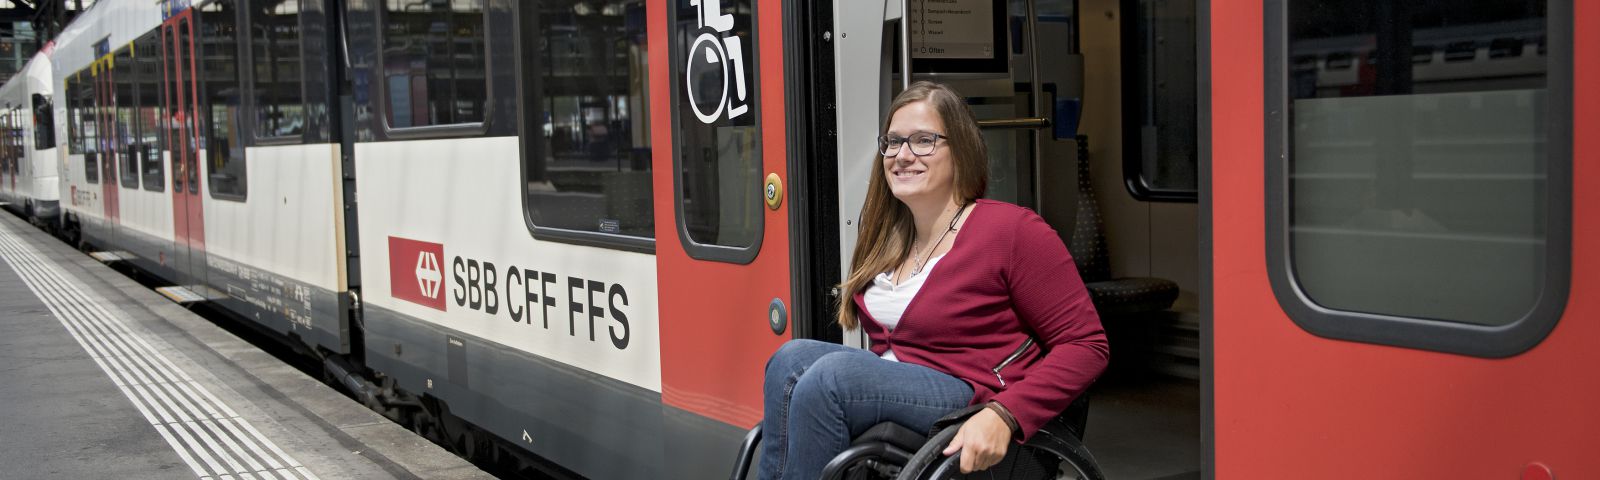 Eine Reisende im Rollstuhl verlässt den Zug.